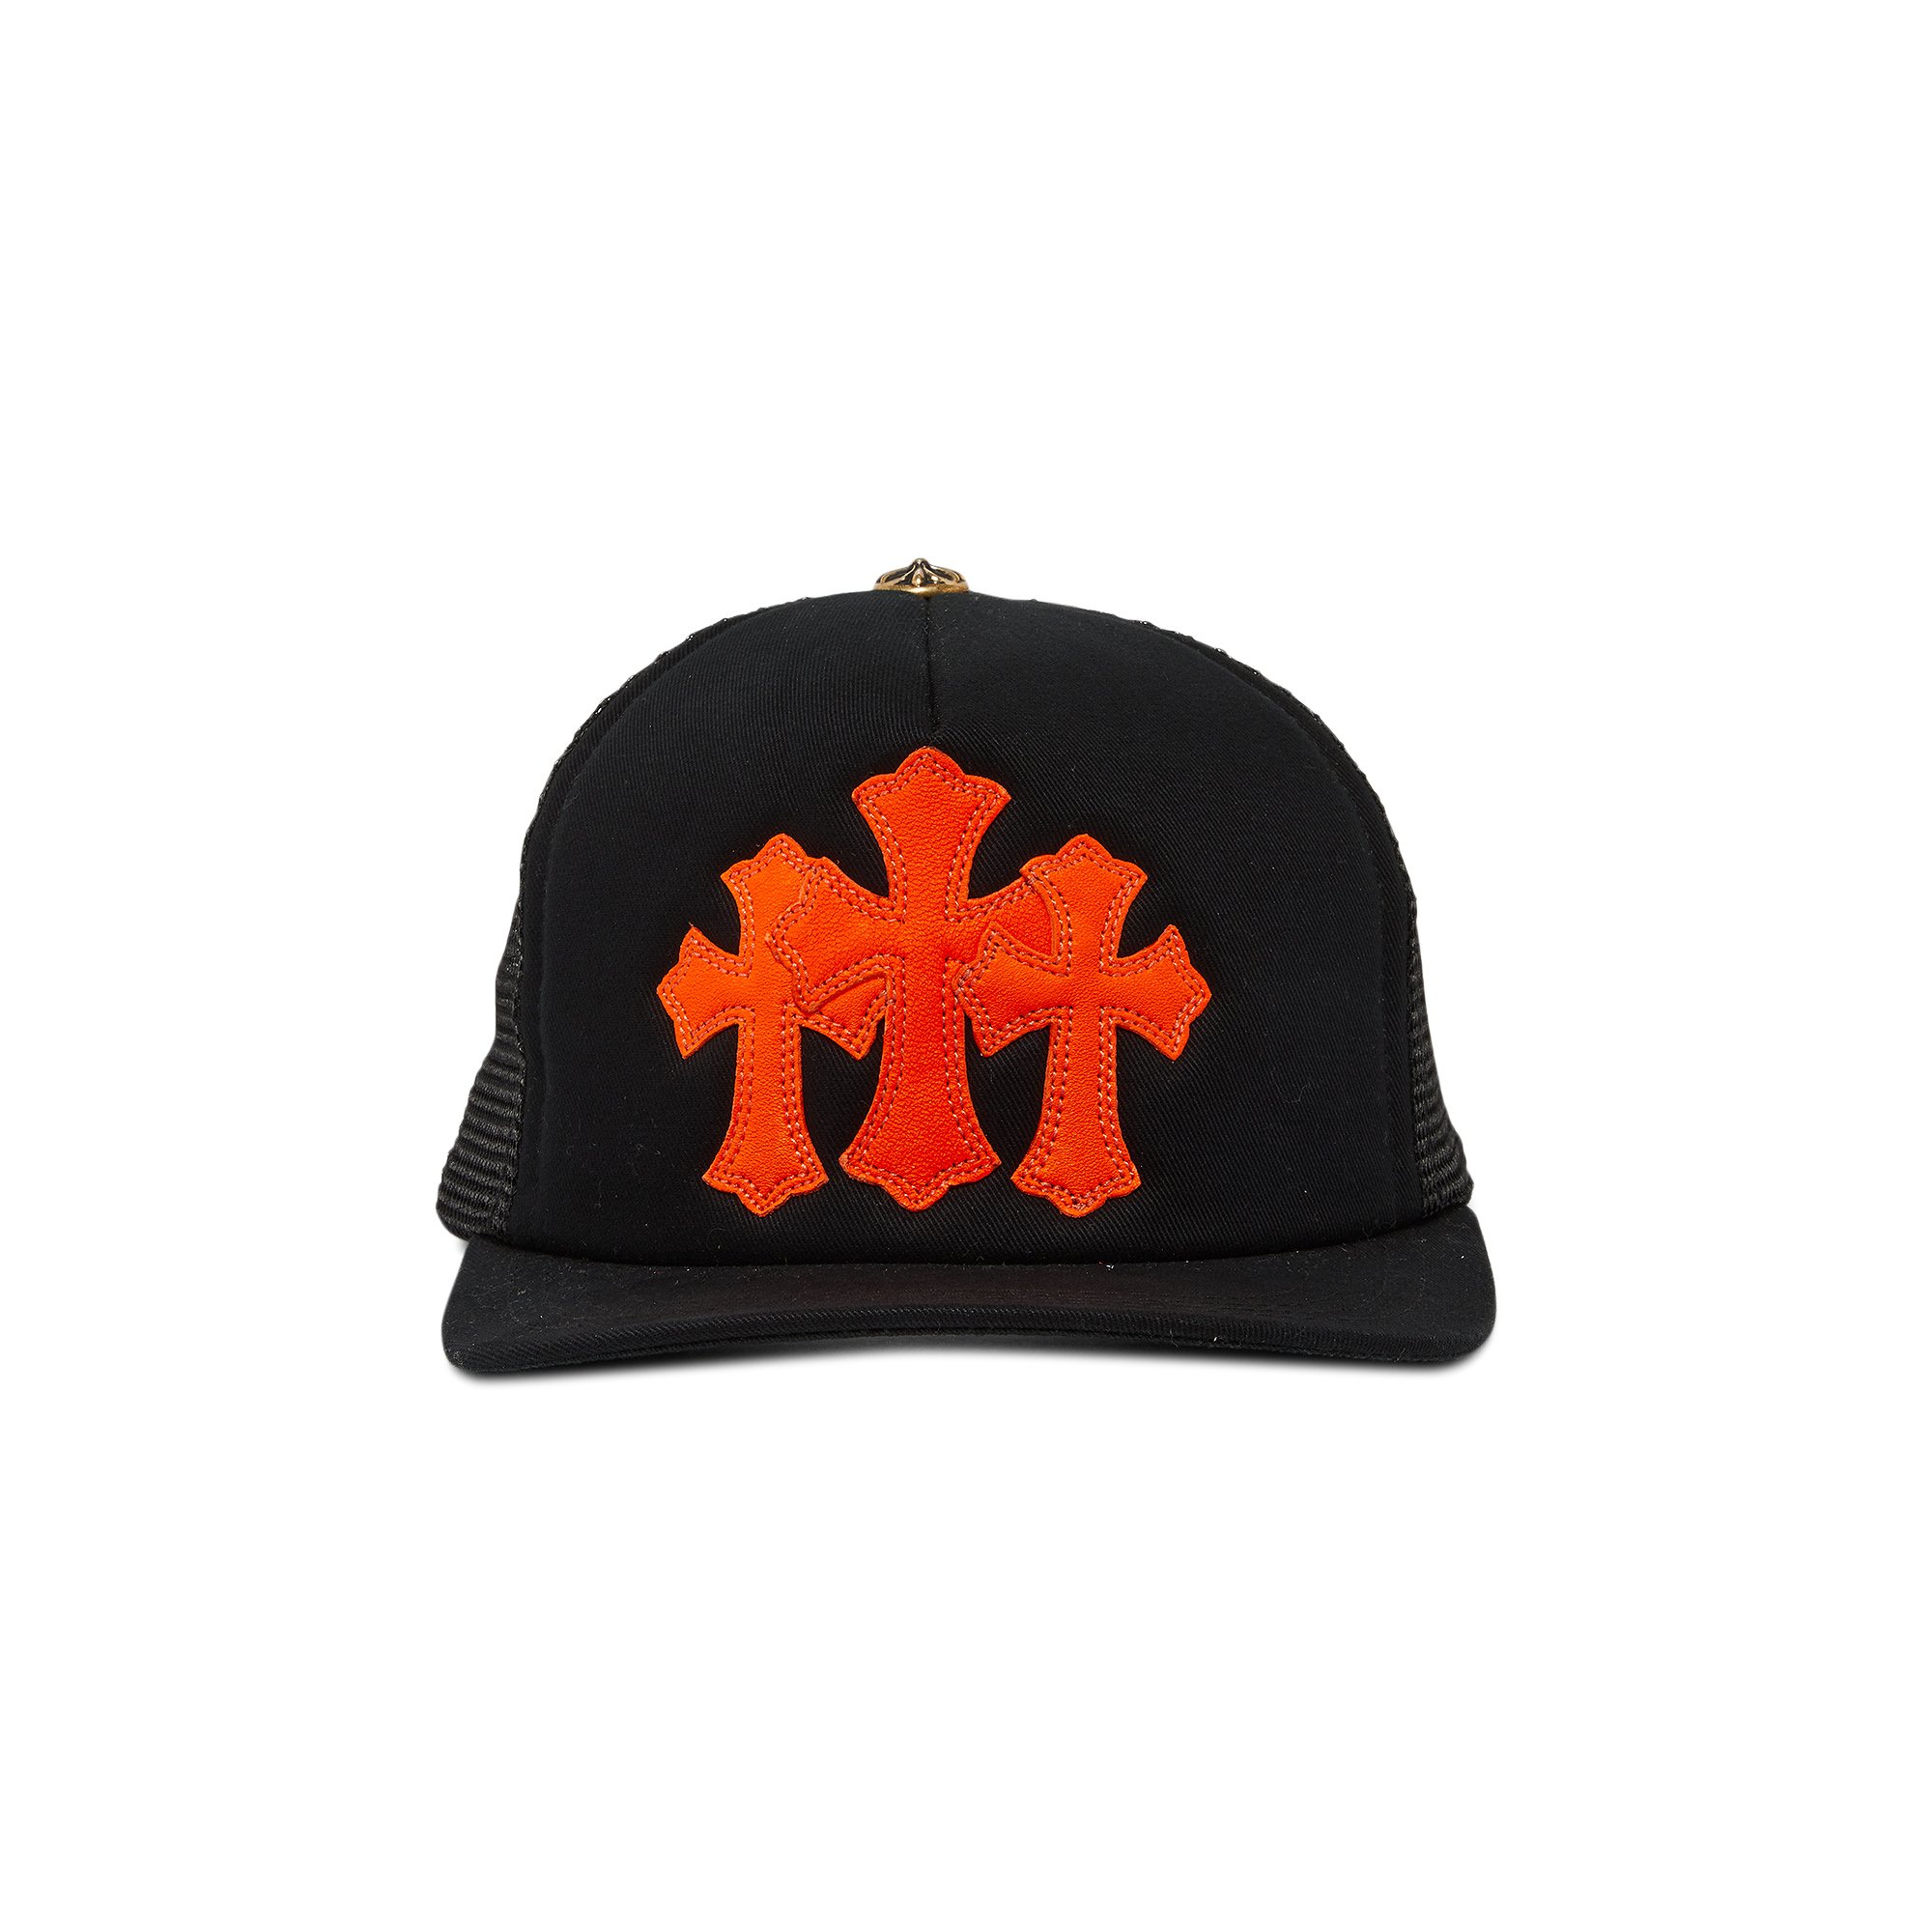 Эксклюзивная кепка дальнобойщика Chrome Hearts St. Barths Cemetery Cross, цвет черный/оранжевый цена и фото